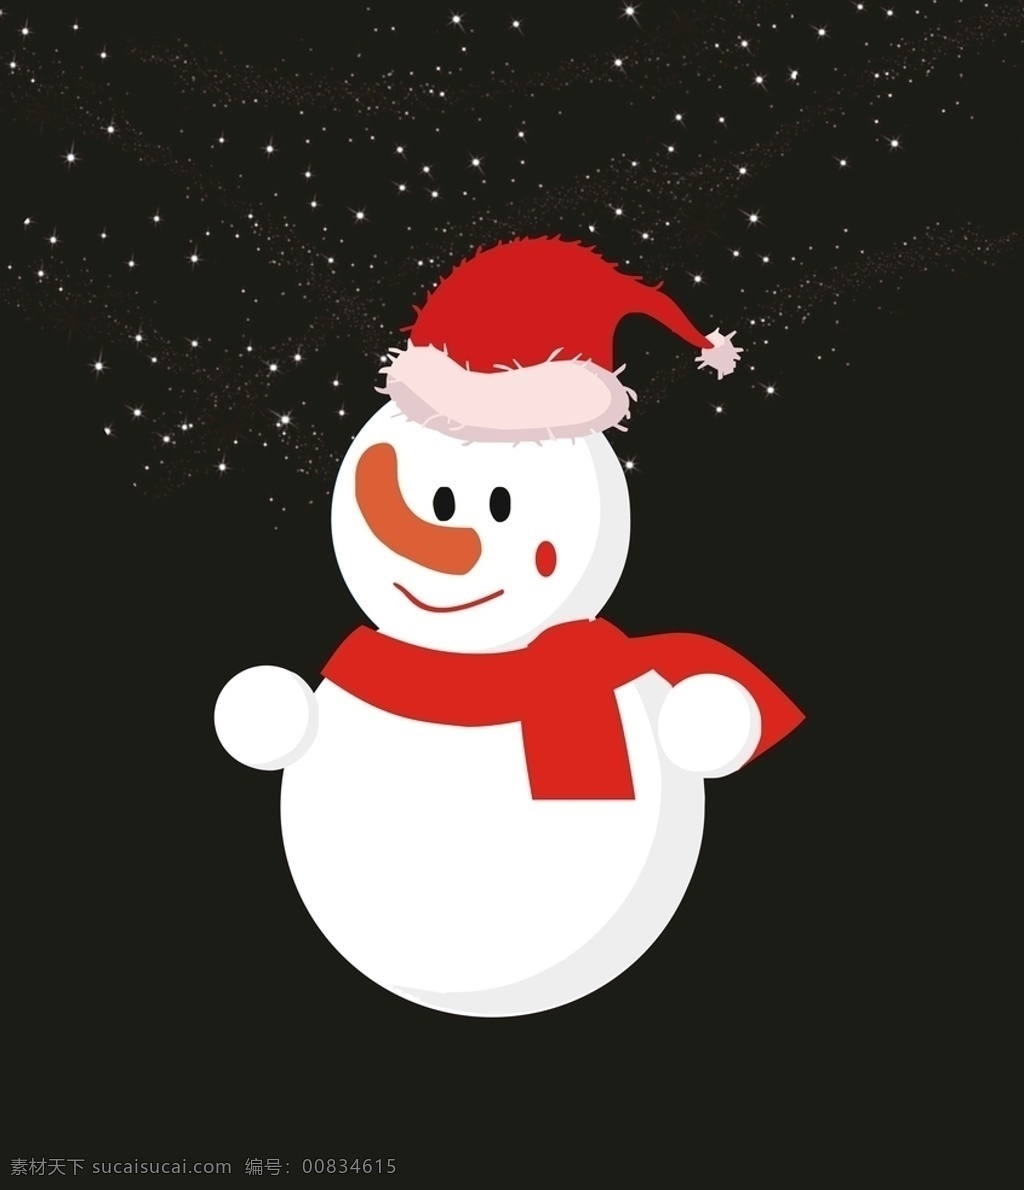 雪人图片 雪人 星星 圣诞 冬天 雪 动漫动画 动漫人物